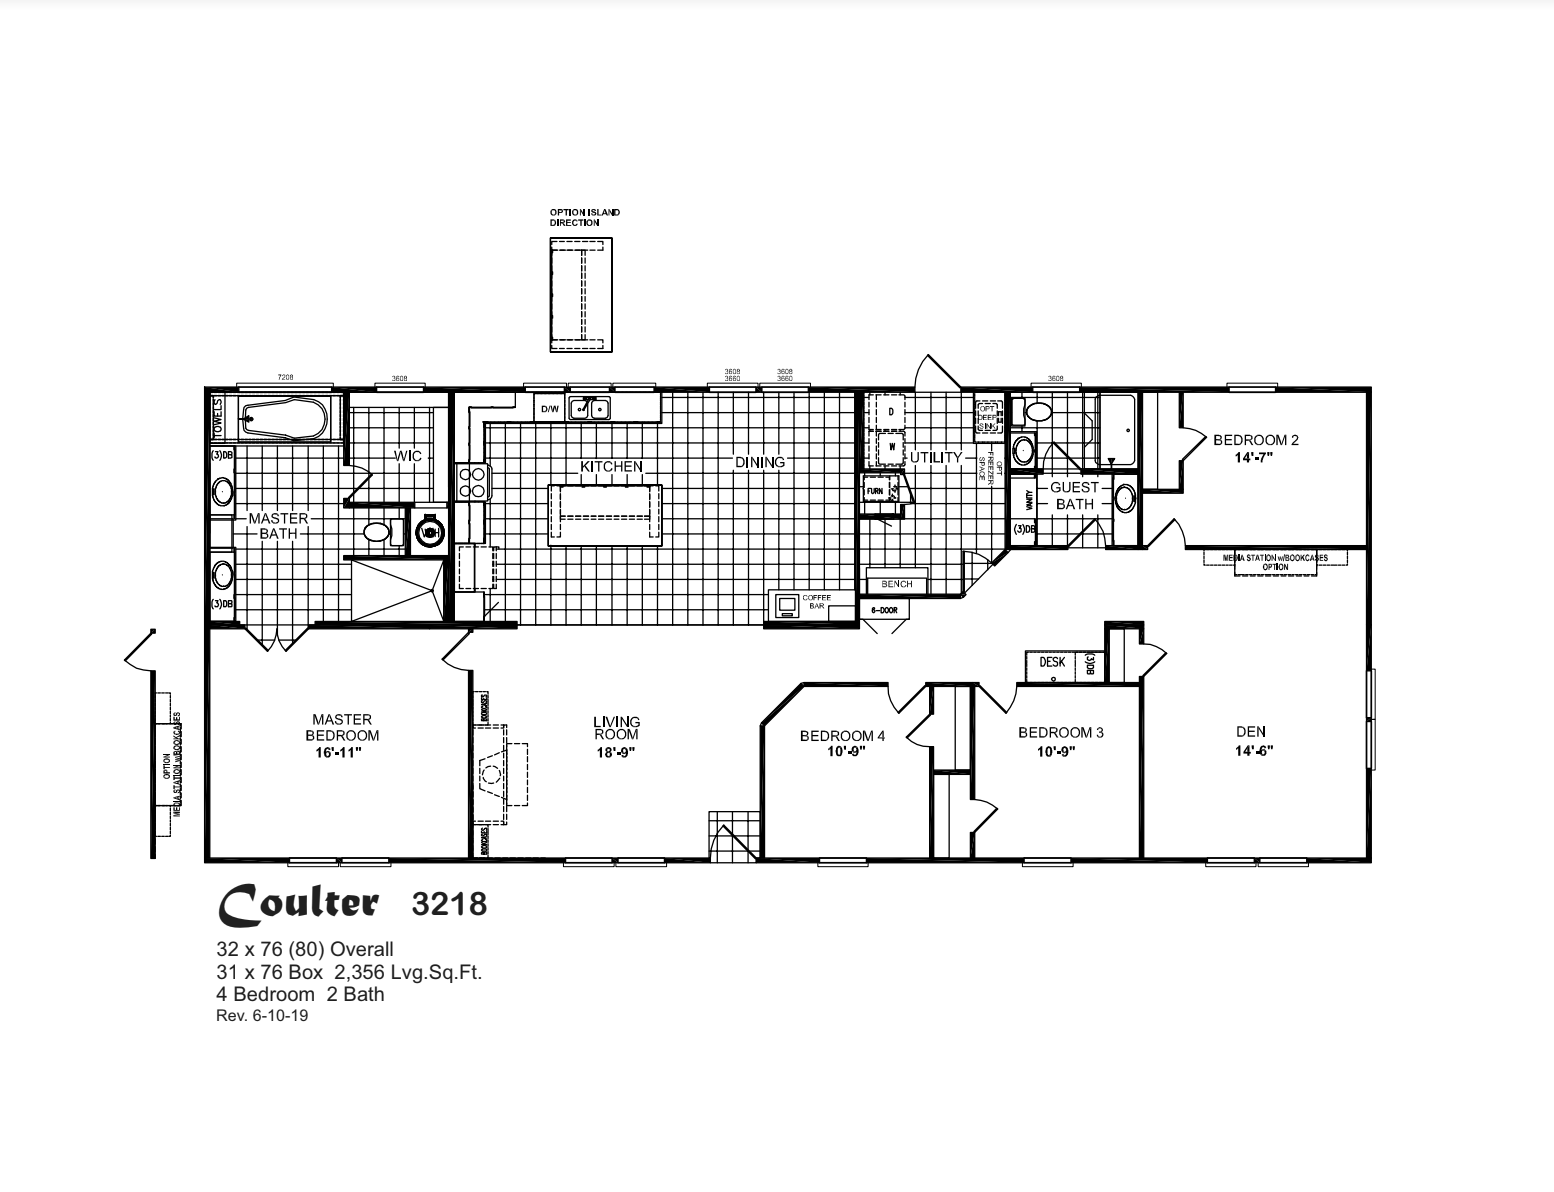 Coulter 3218 Floor Plan